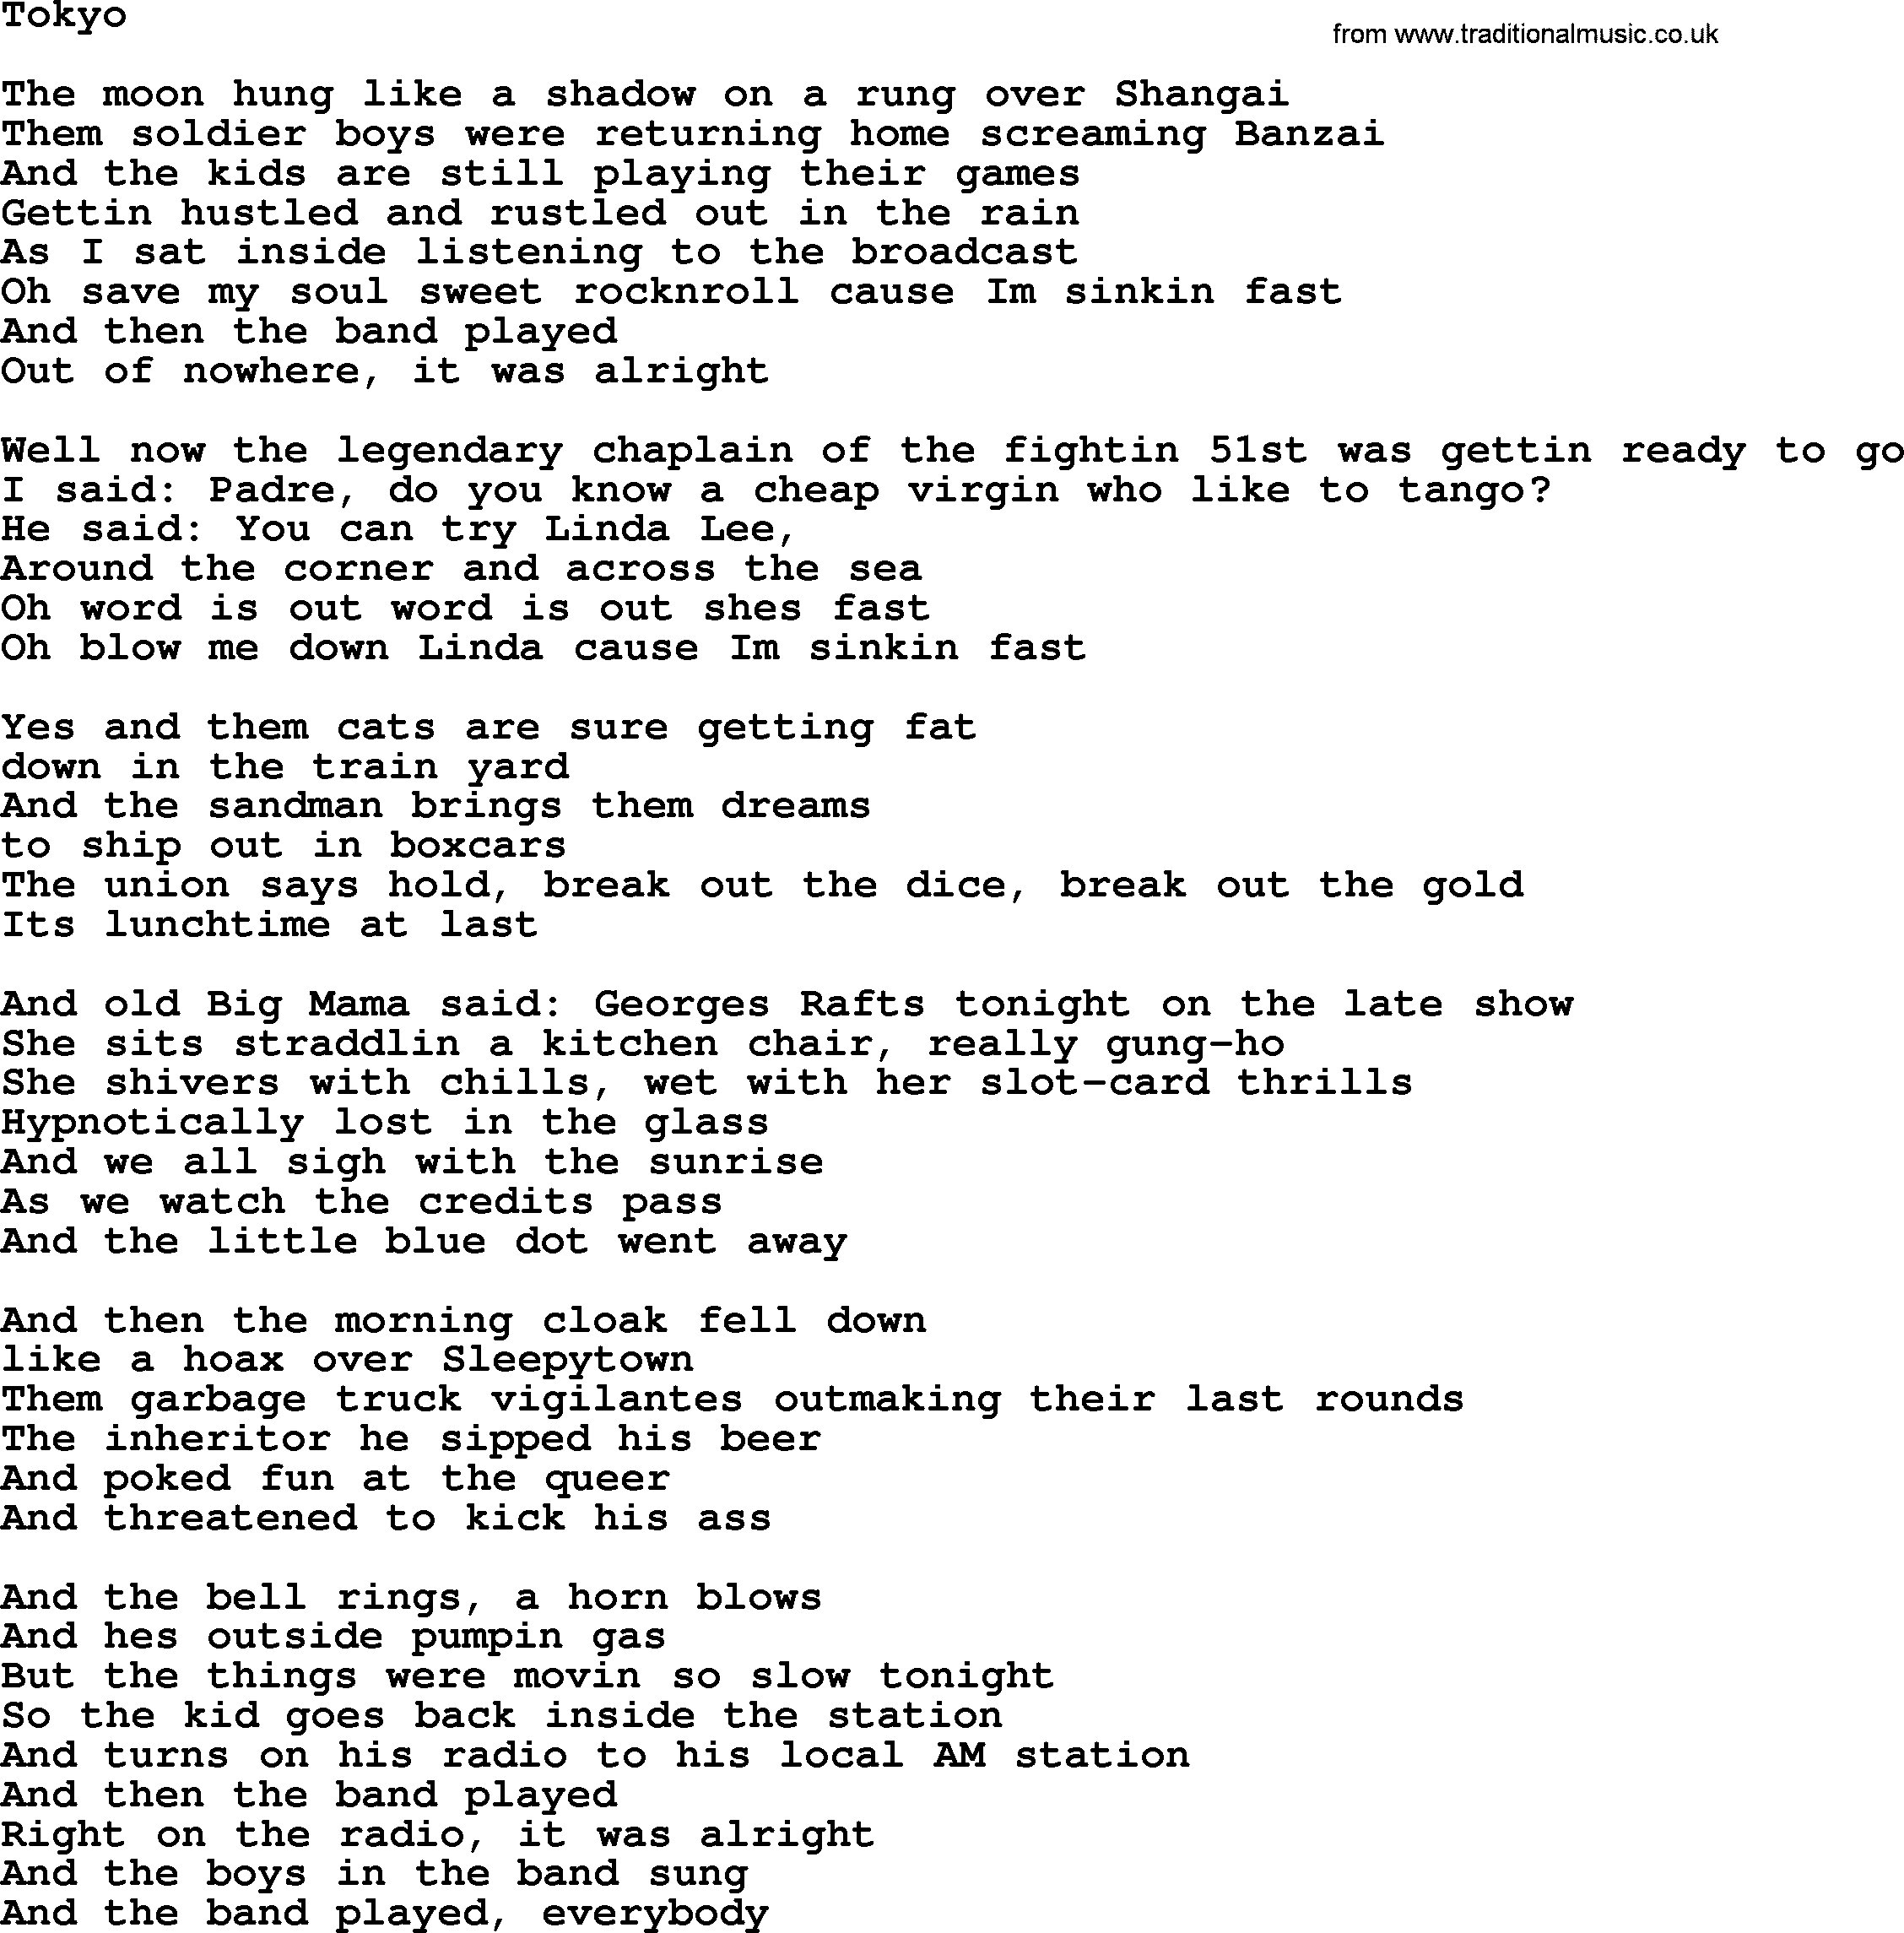 Bruce Springsteen song: Tokyo lyrics